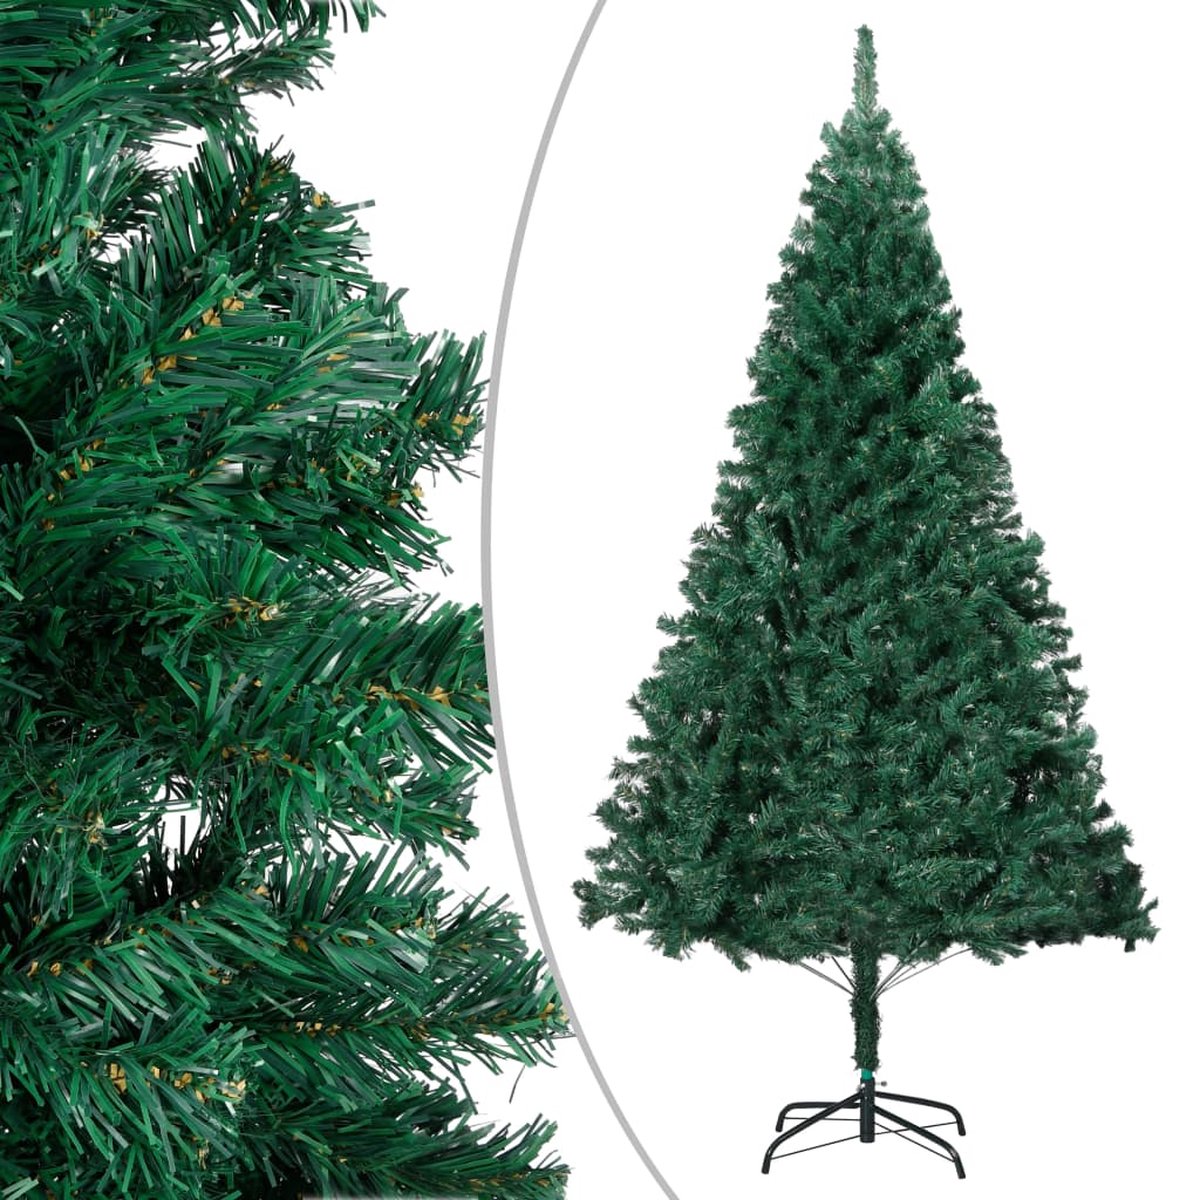 VidaLife Kunstkerstboom met dikke takken 120 cm PVC groen